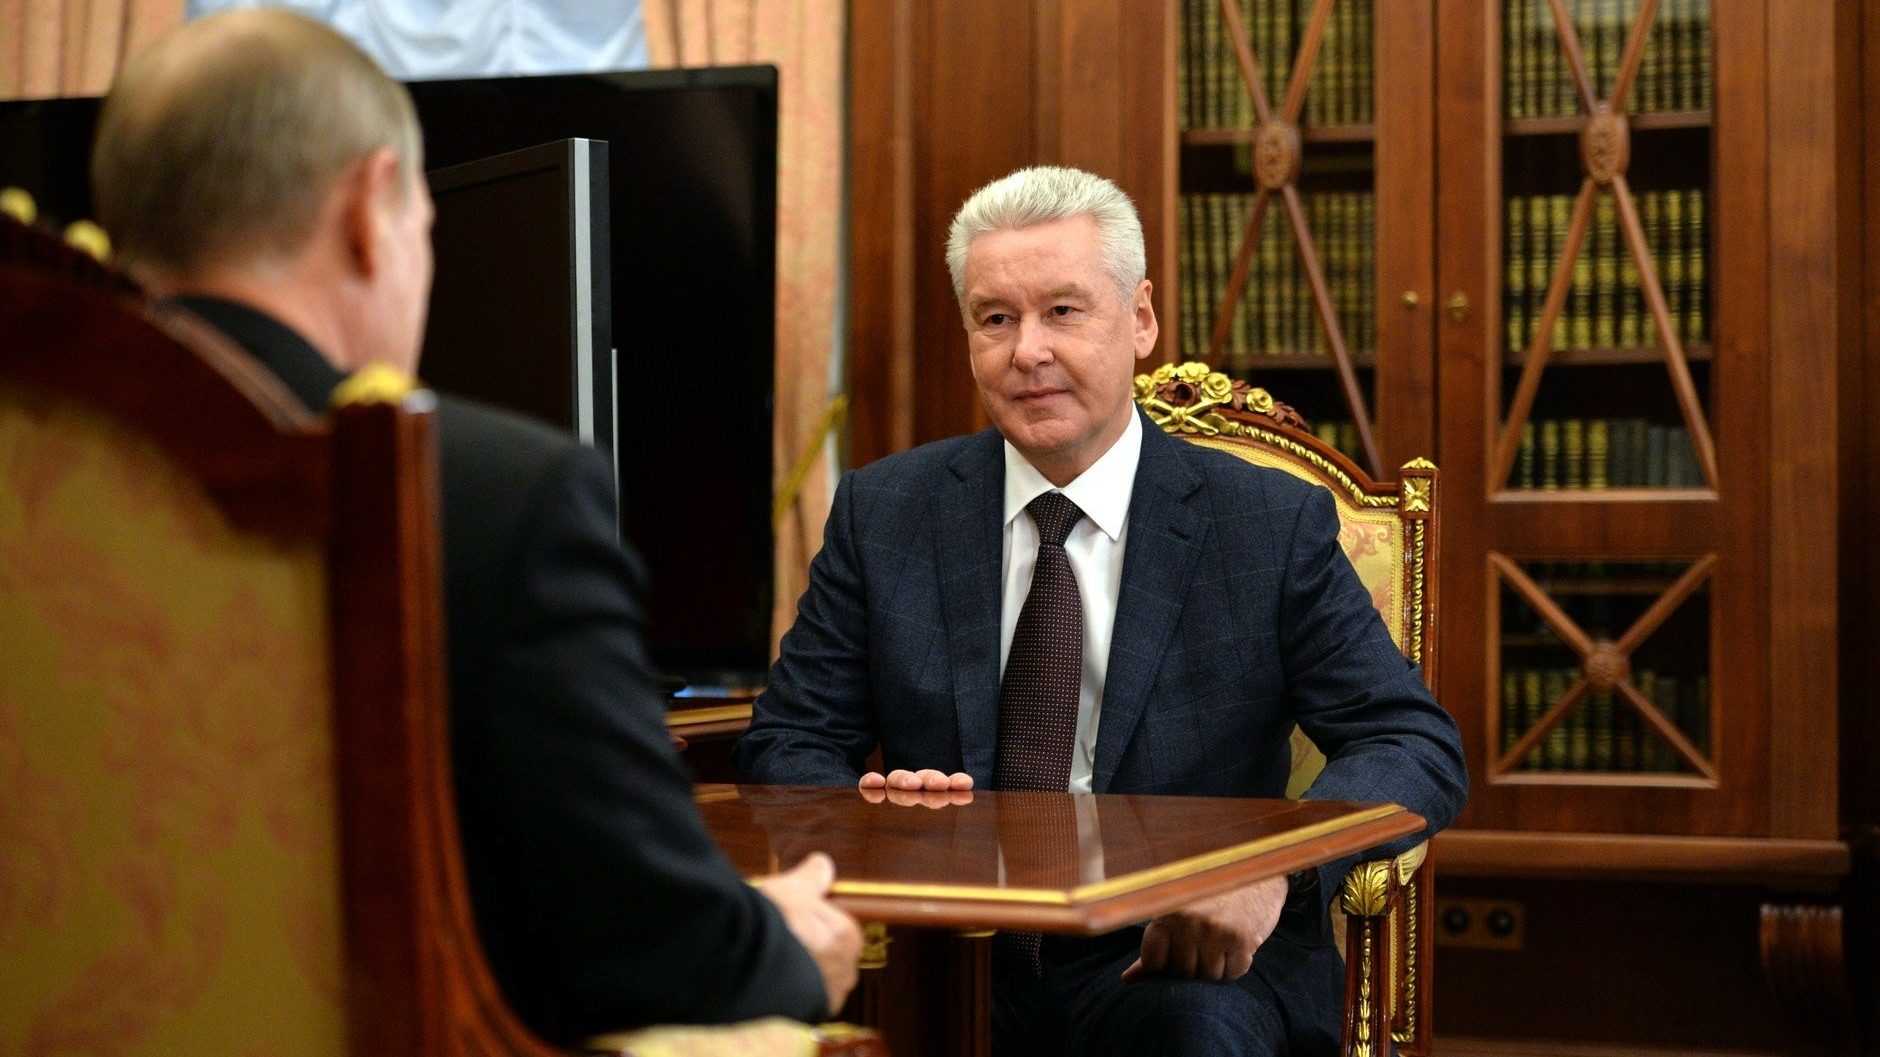 Сергей Собянин официально зарегистрирован как кандидат на пост мэра Москвы на осенних выборах